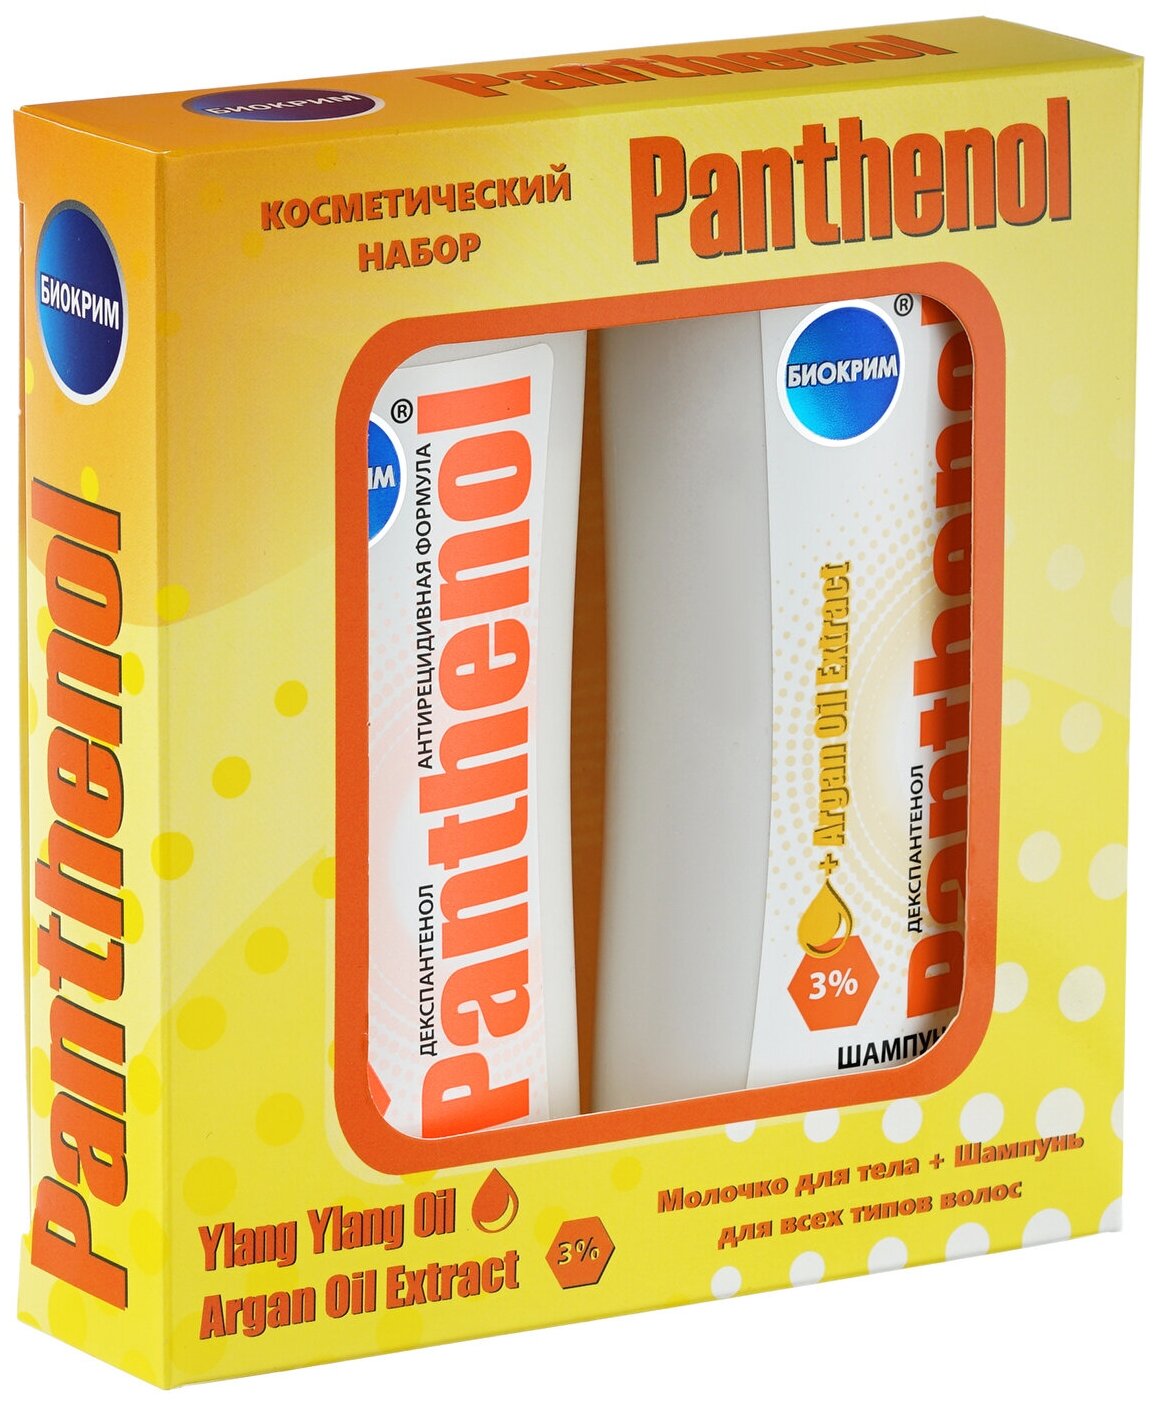 Биокрим Подарочный набор "Panthenol" Молочко для тела + Шампунь